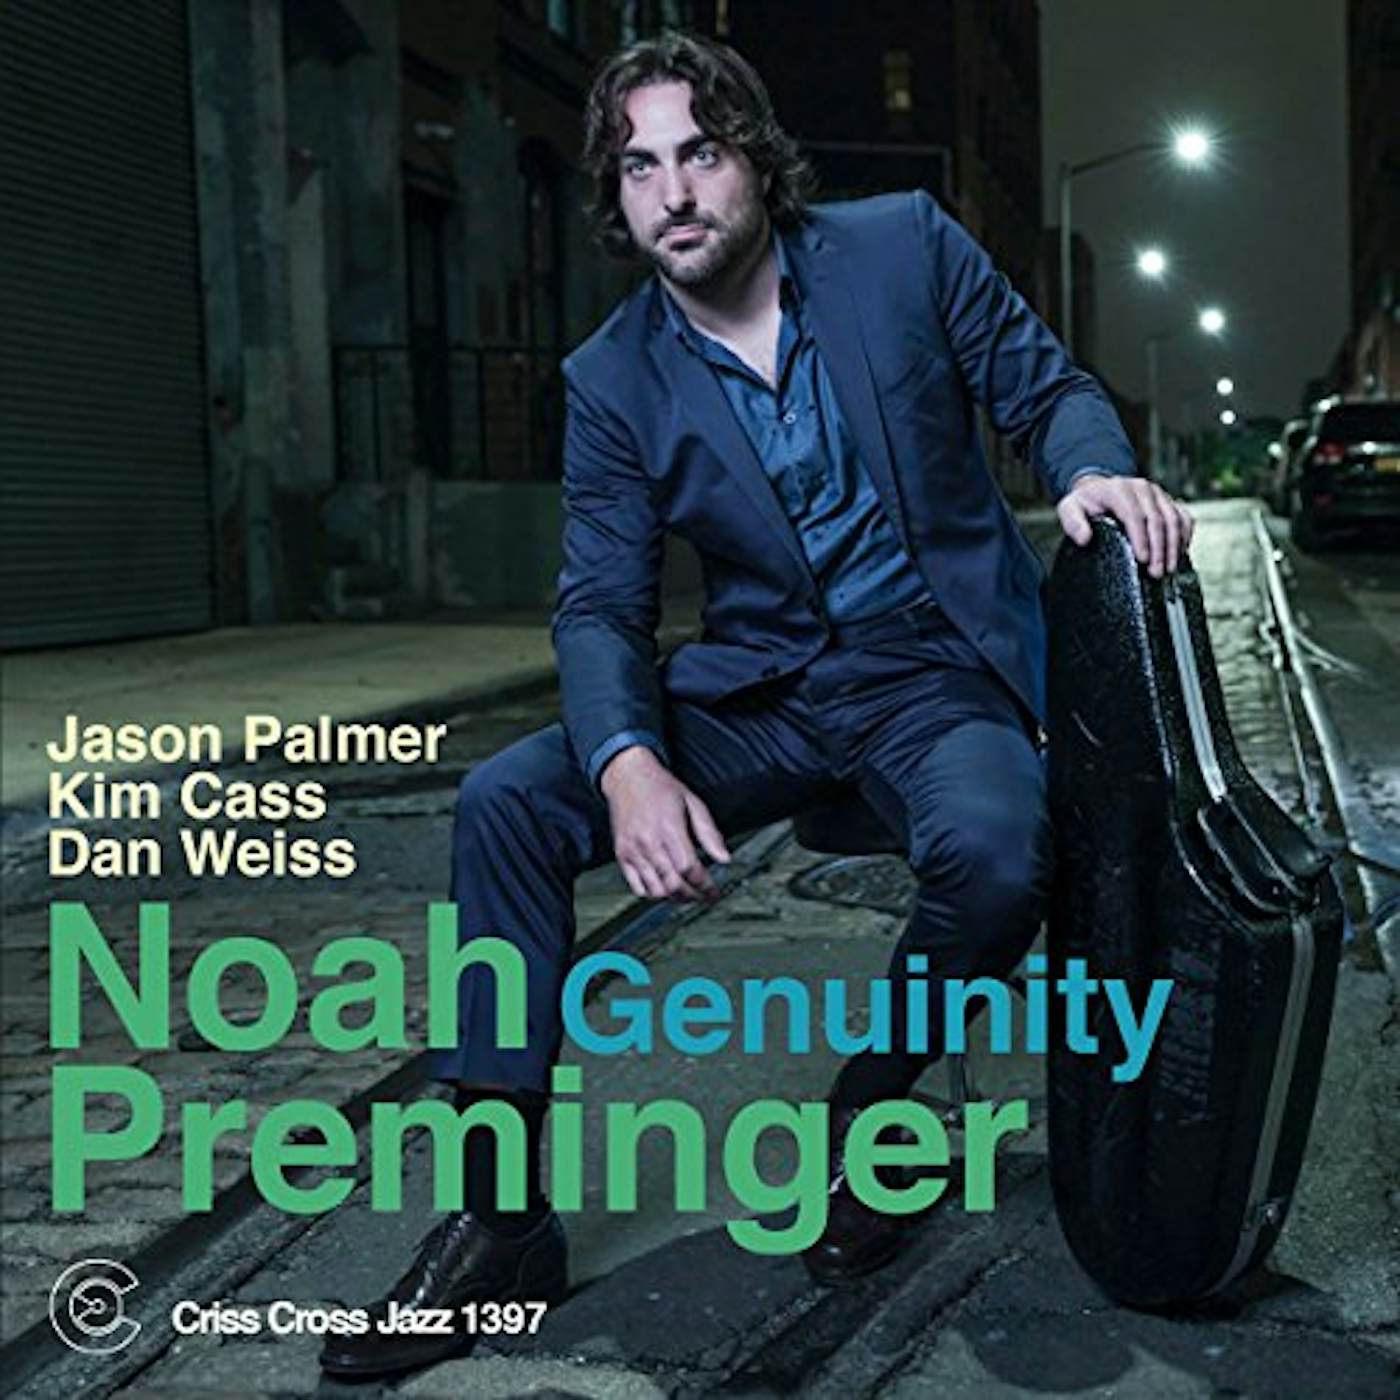 Noah Preminger GENUINITY CD